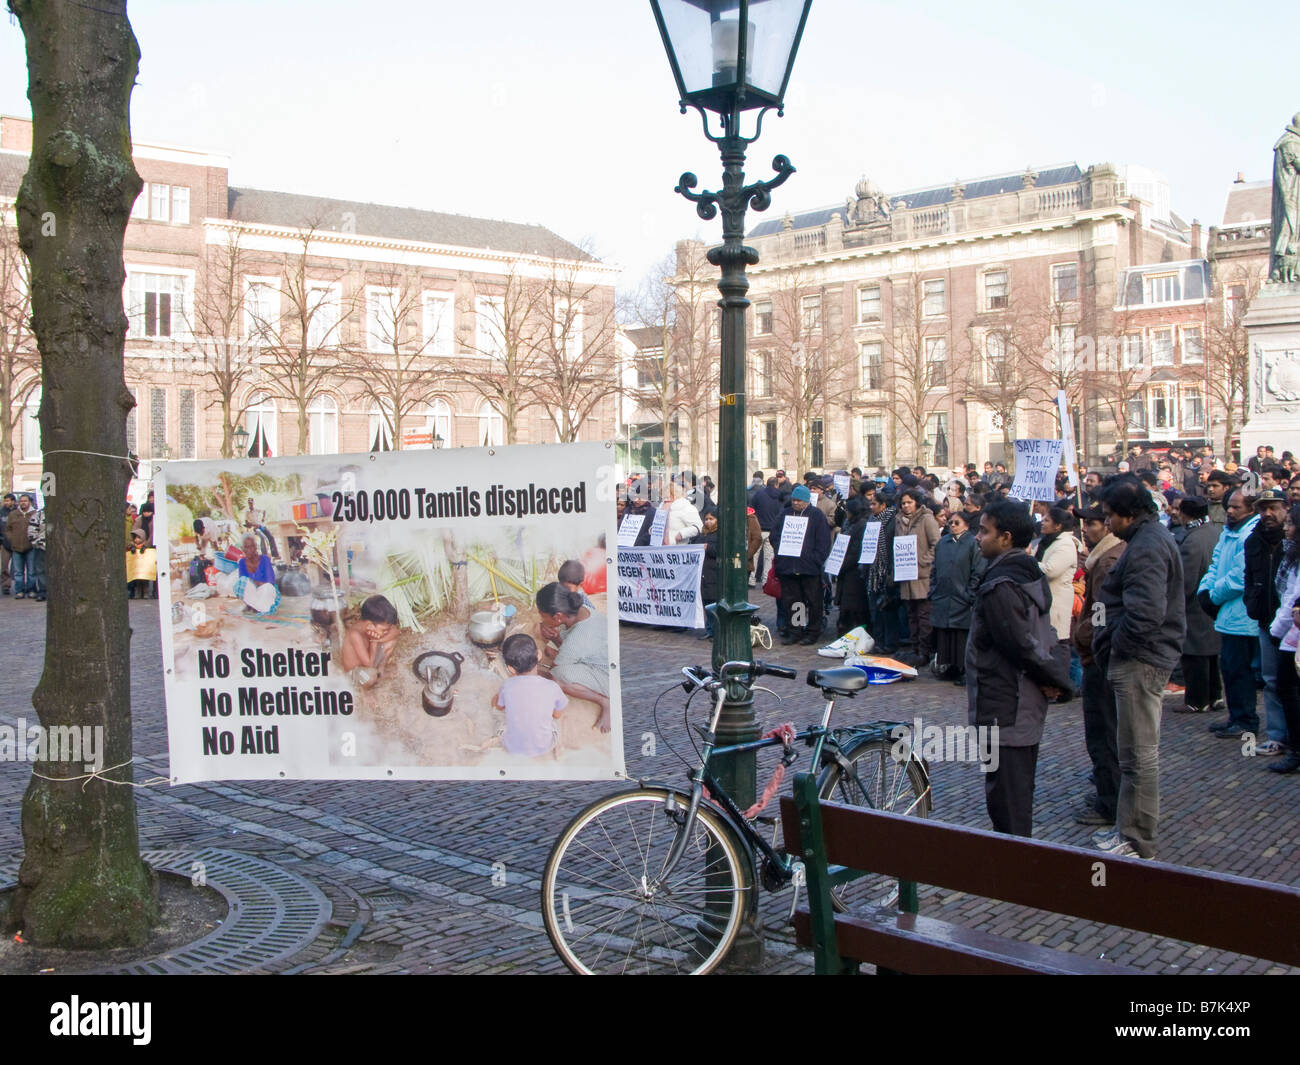 Manifestation de protestation contre le gouvernement du Sri Lanka la guerre avec les Tamouls, La Haye, Pays-Bas Banque D'Images